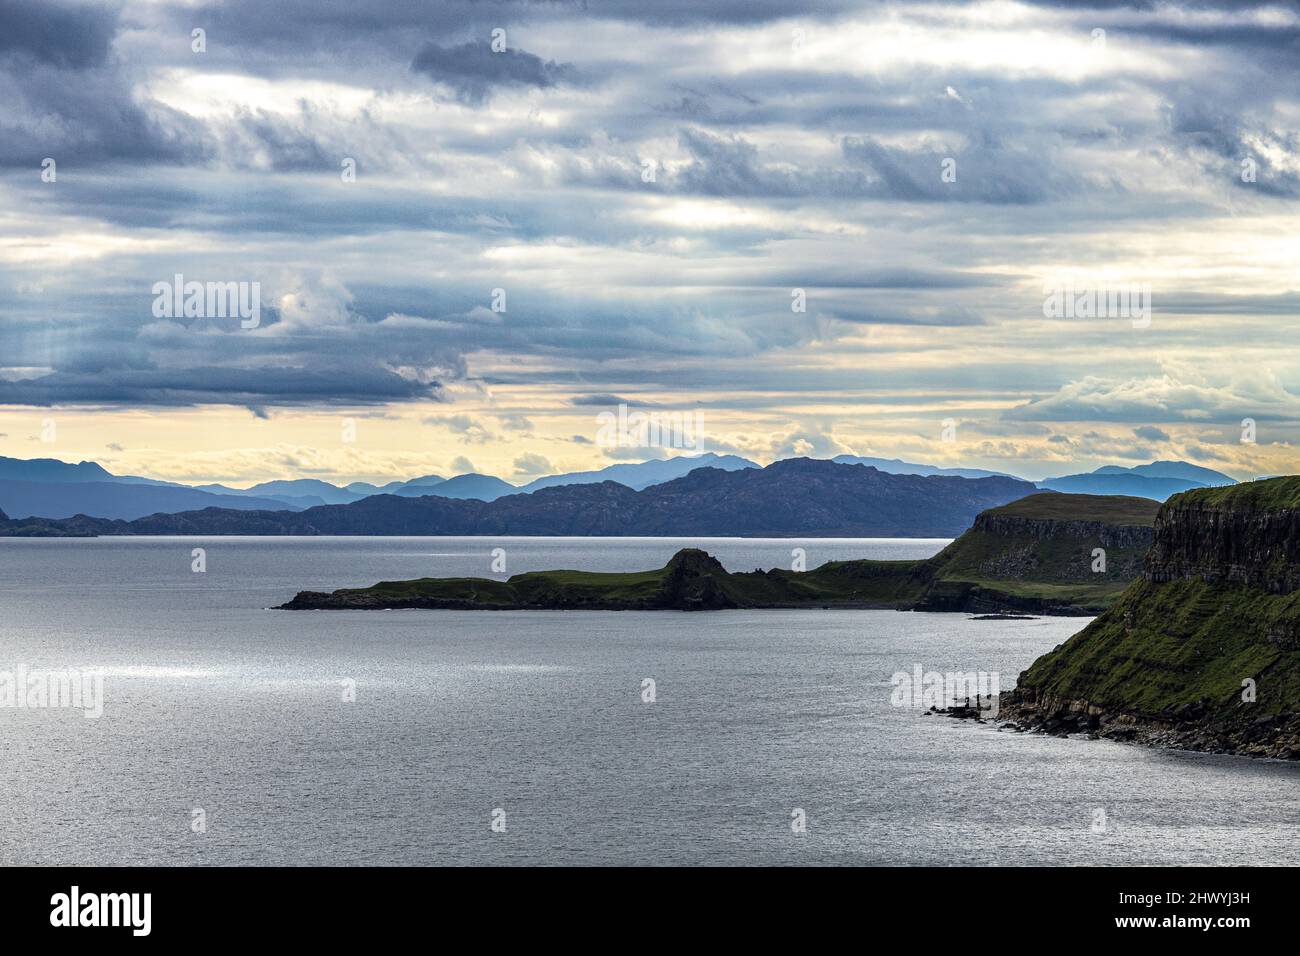 Ein Blick auf das schottische Festland von der Nordostküste der Isle of Skye, Highland, Schottland Großbritannien. Die Insel Rona steht im Vordergrund. Stockfoto